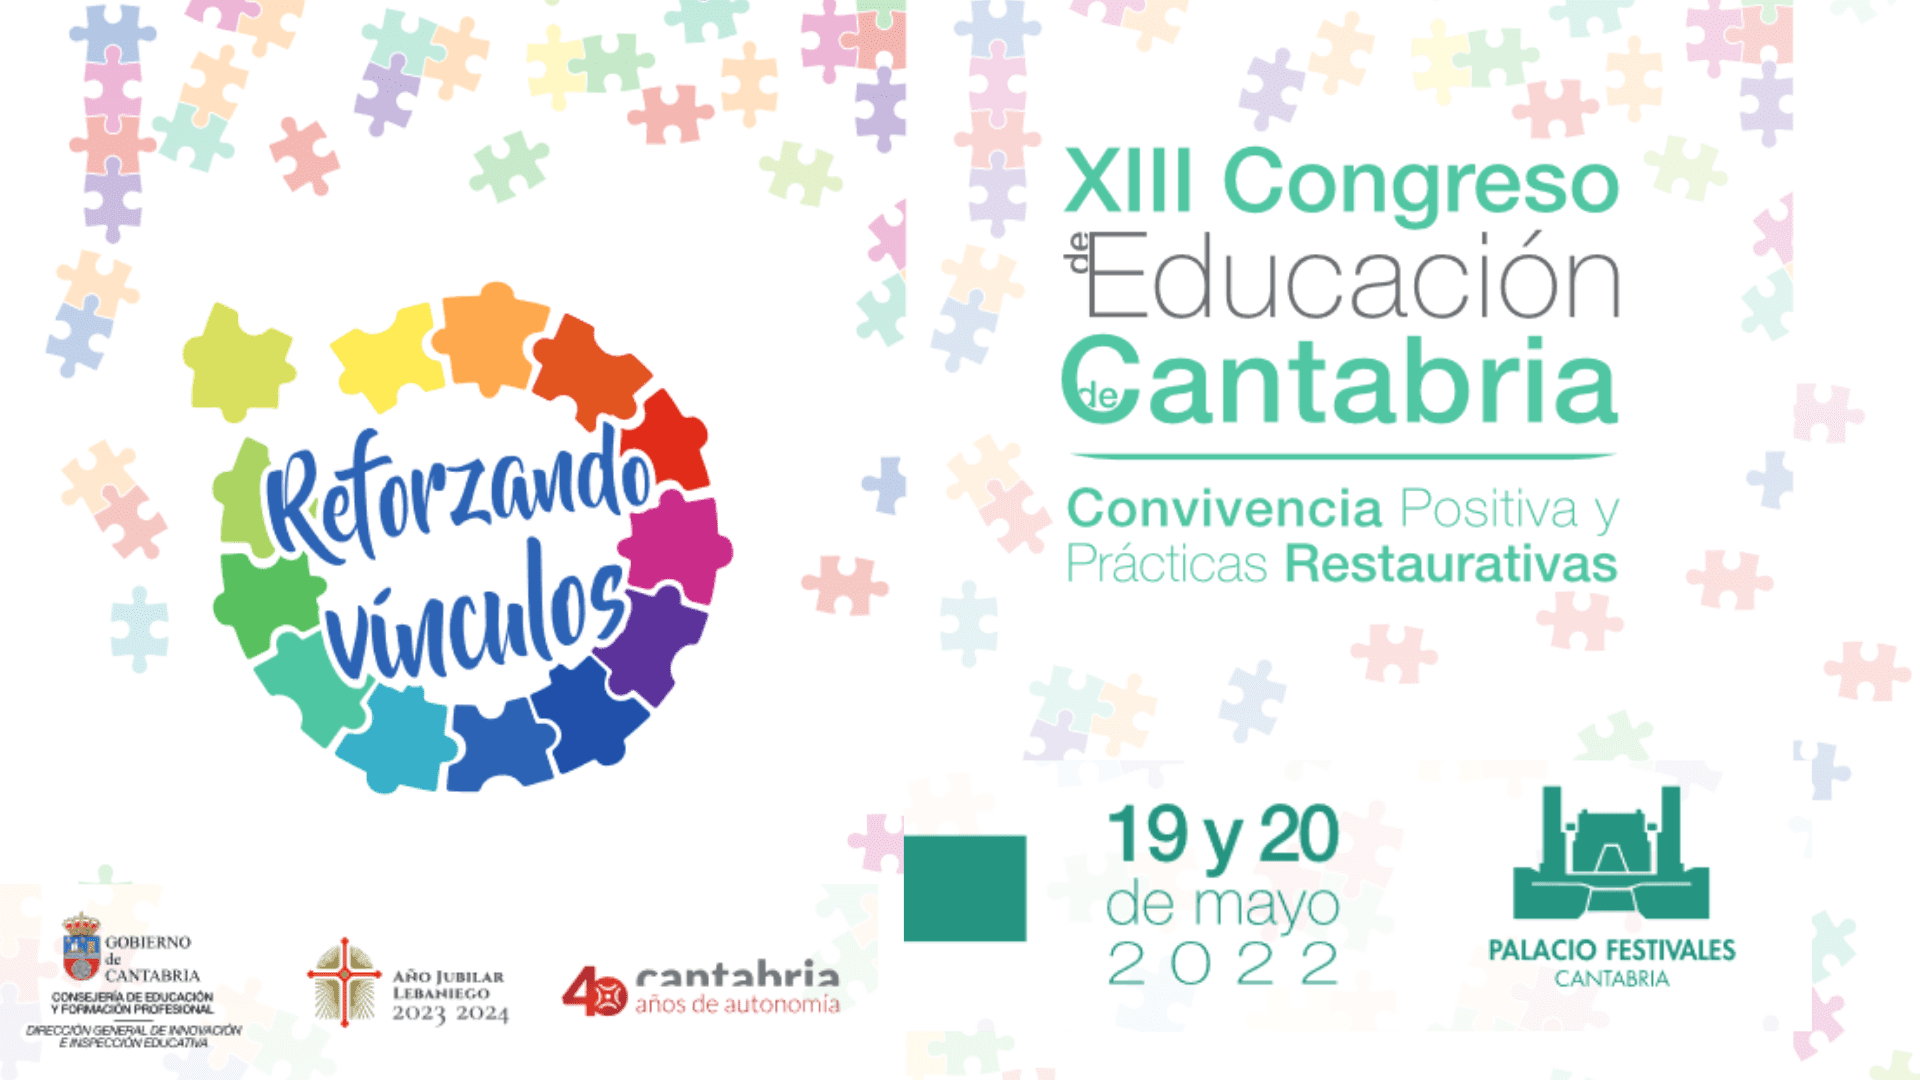 Convivencia Positiva y Prácticas Restaurativas - Congreso Cantabria